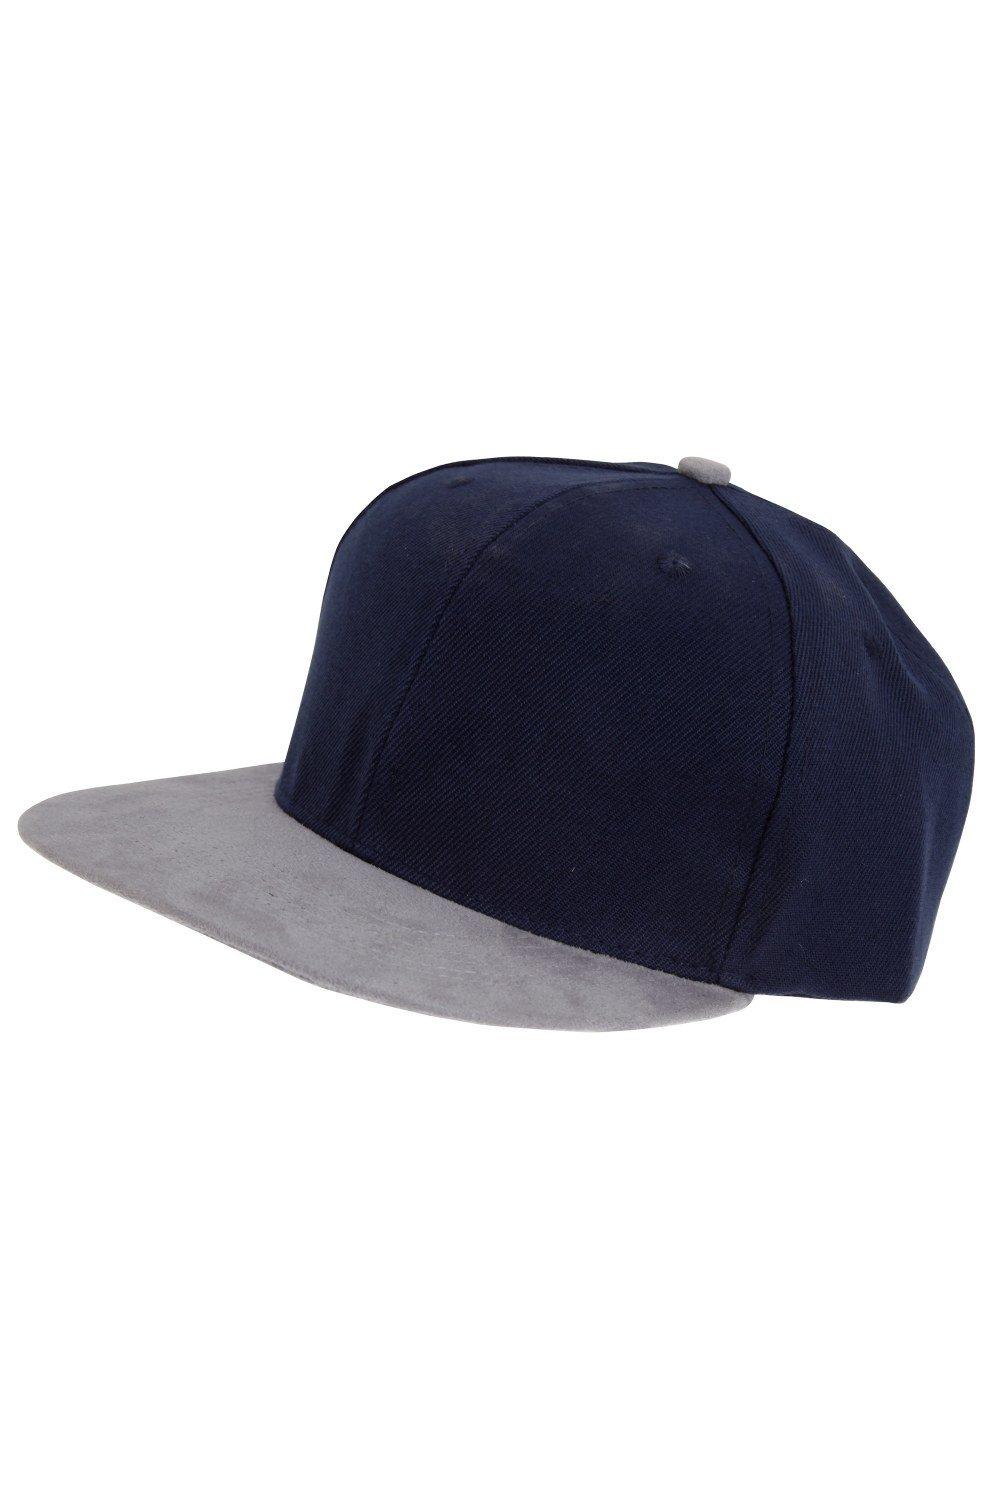 Бейсбольная кепка Snapback Tom Franks, темно-синий бейсбольная кепка snapback с логотипом band trooper brim iron maiden черный